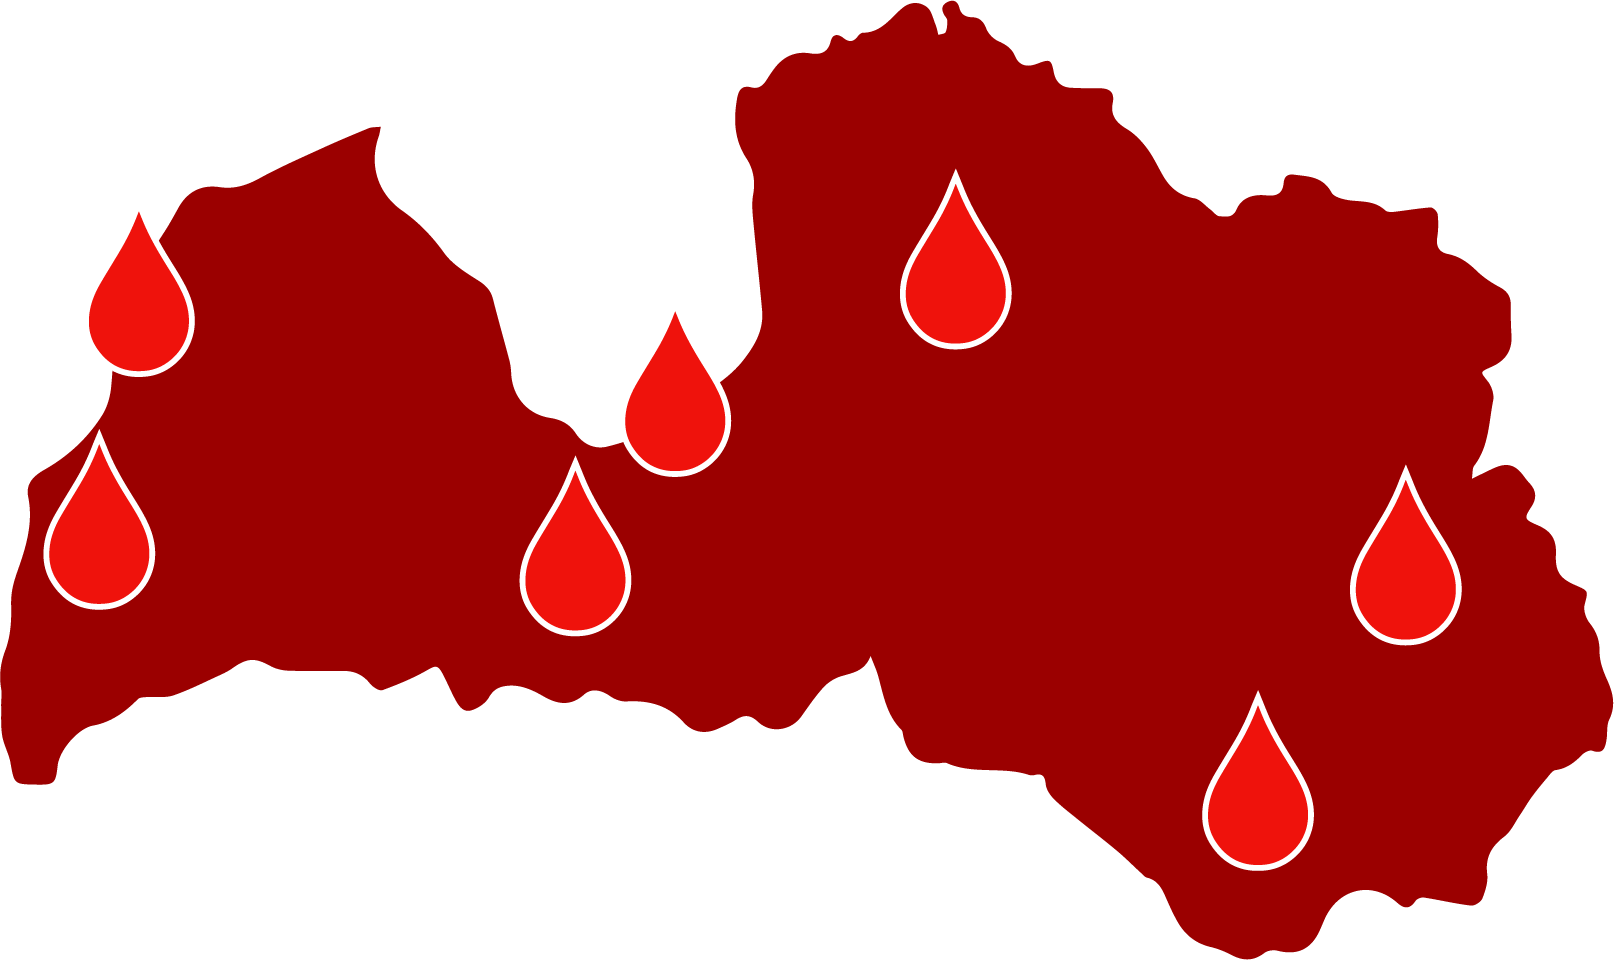 Pastāvīgās asins ziedošanas vietas Latvijā